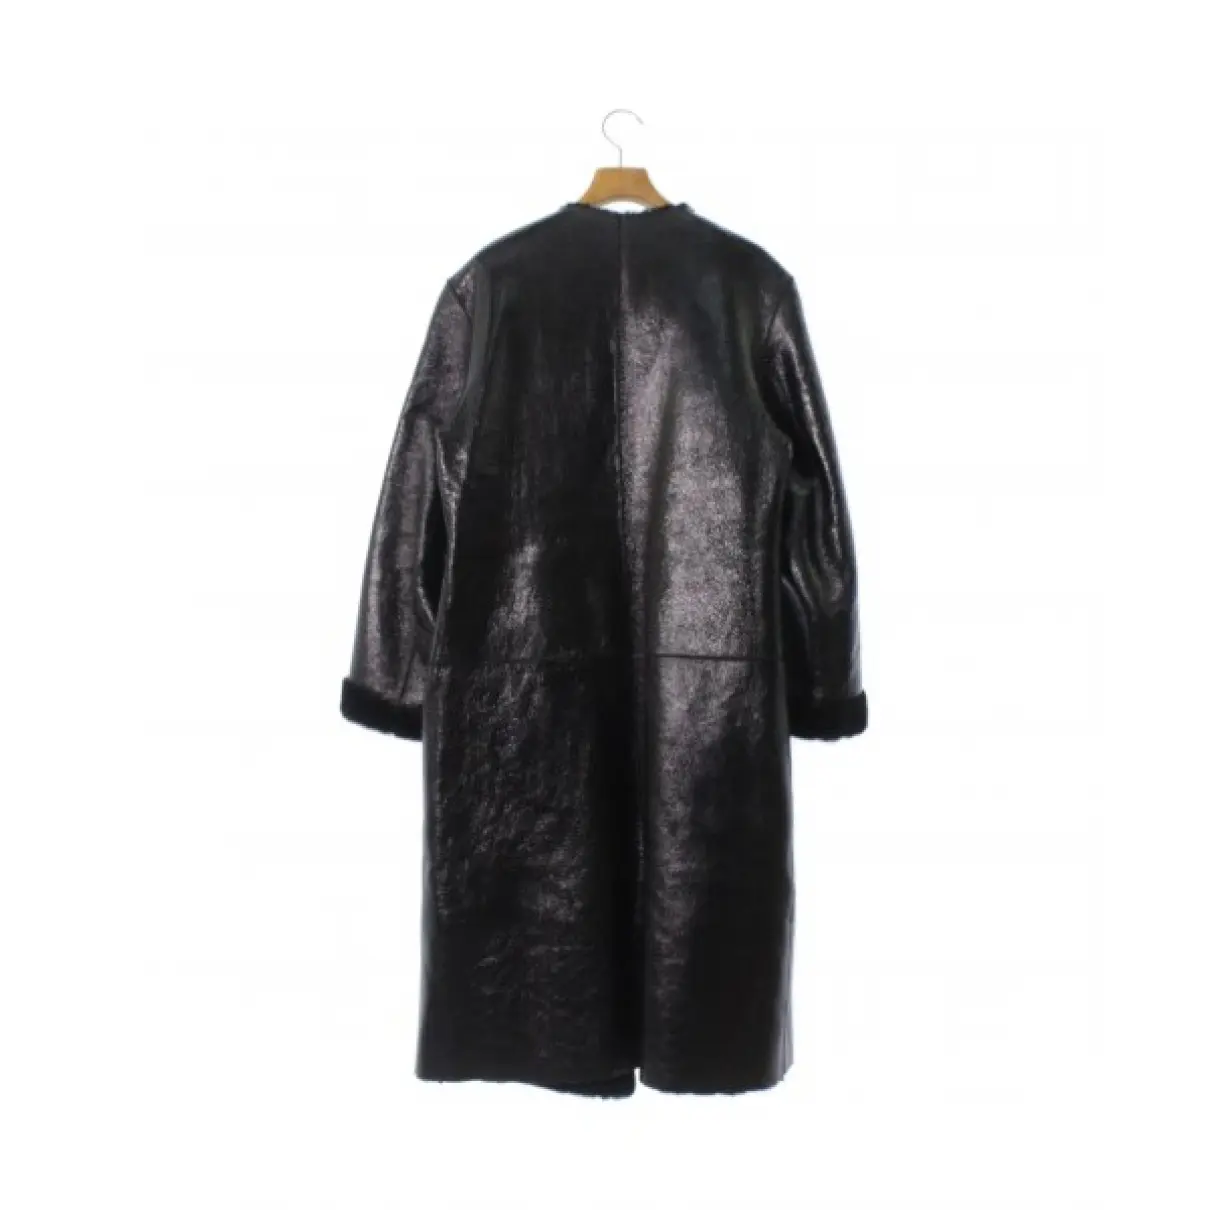 Buy Nicole Farhi Leather coat online